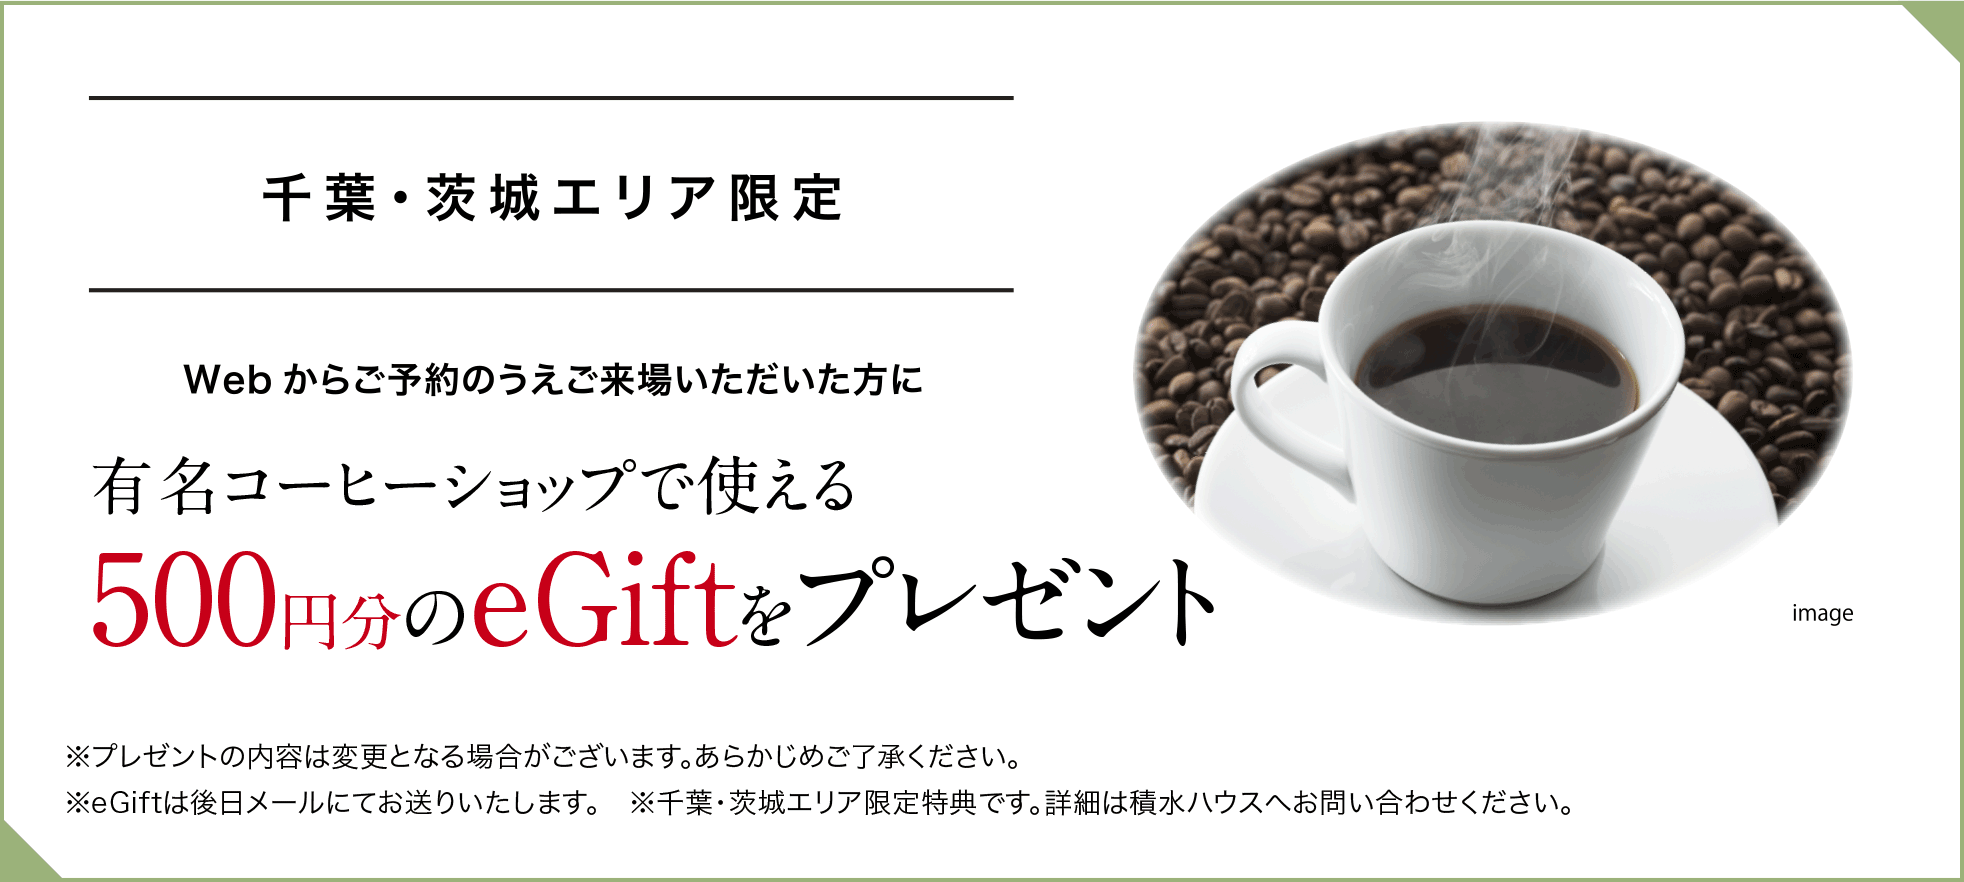 千葉・茨城エリア限定 Webからご予約のうえご来場いただいた方に有名コーヒーショップで使える500円分のeGiftをプレゼント